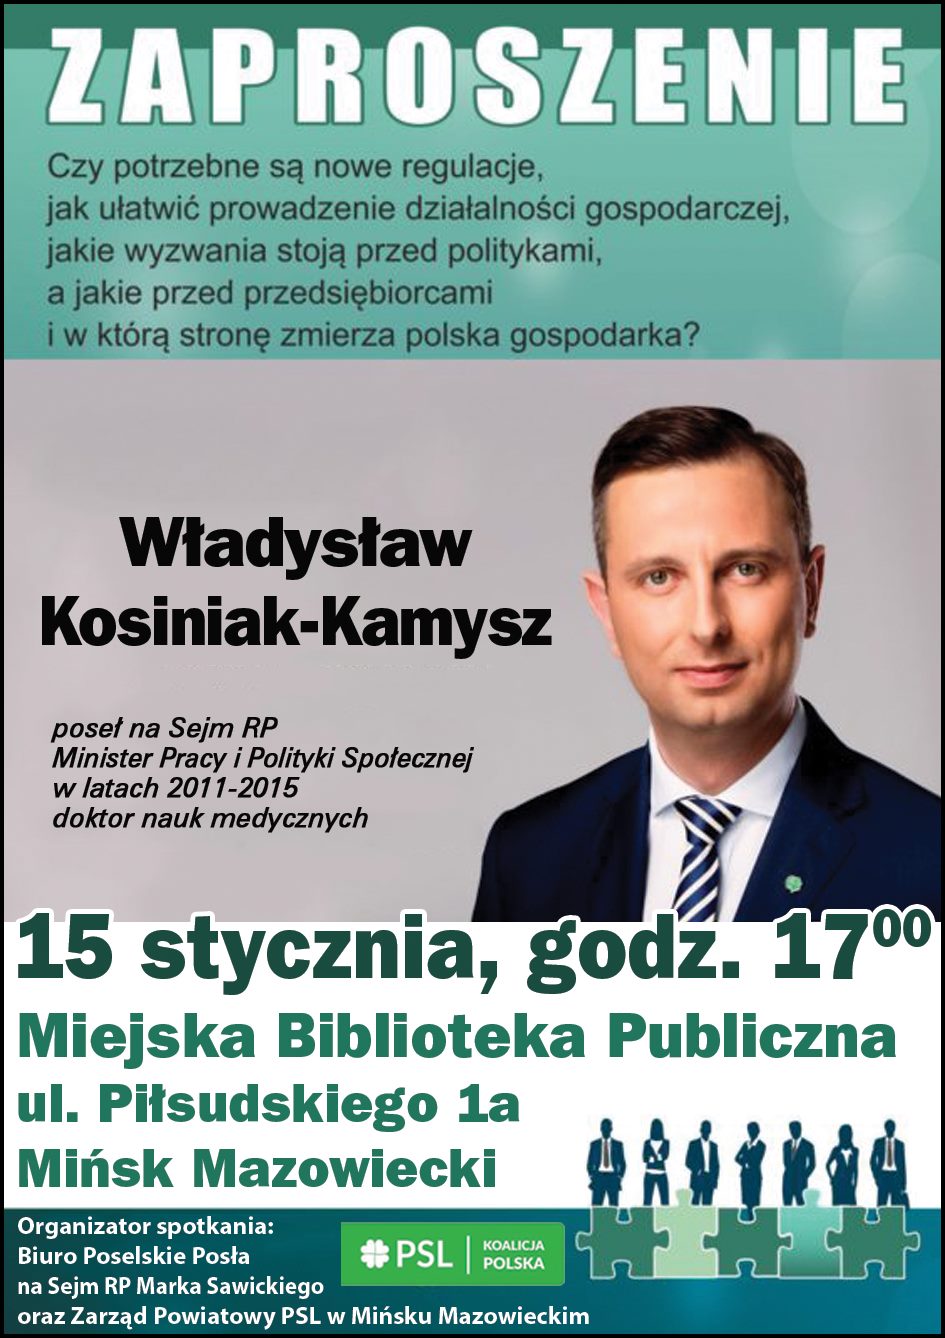 Spotkanie z Władysławem Kosiniak-Kamyszem